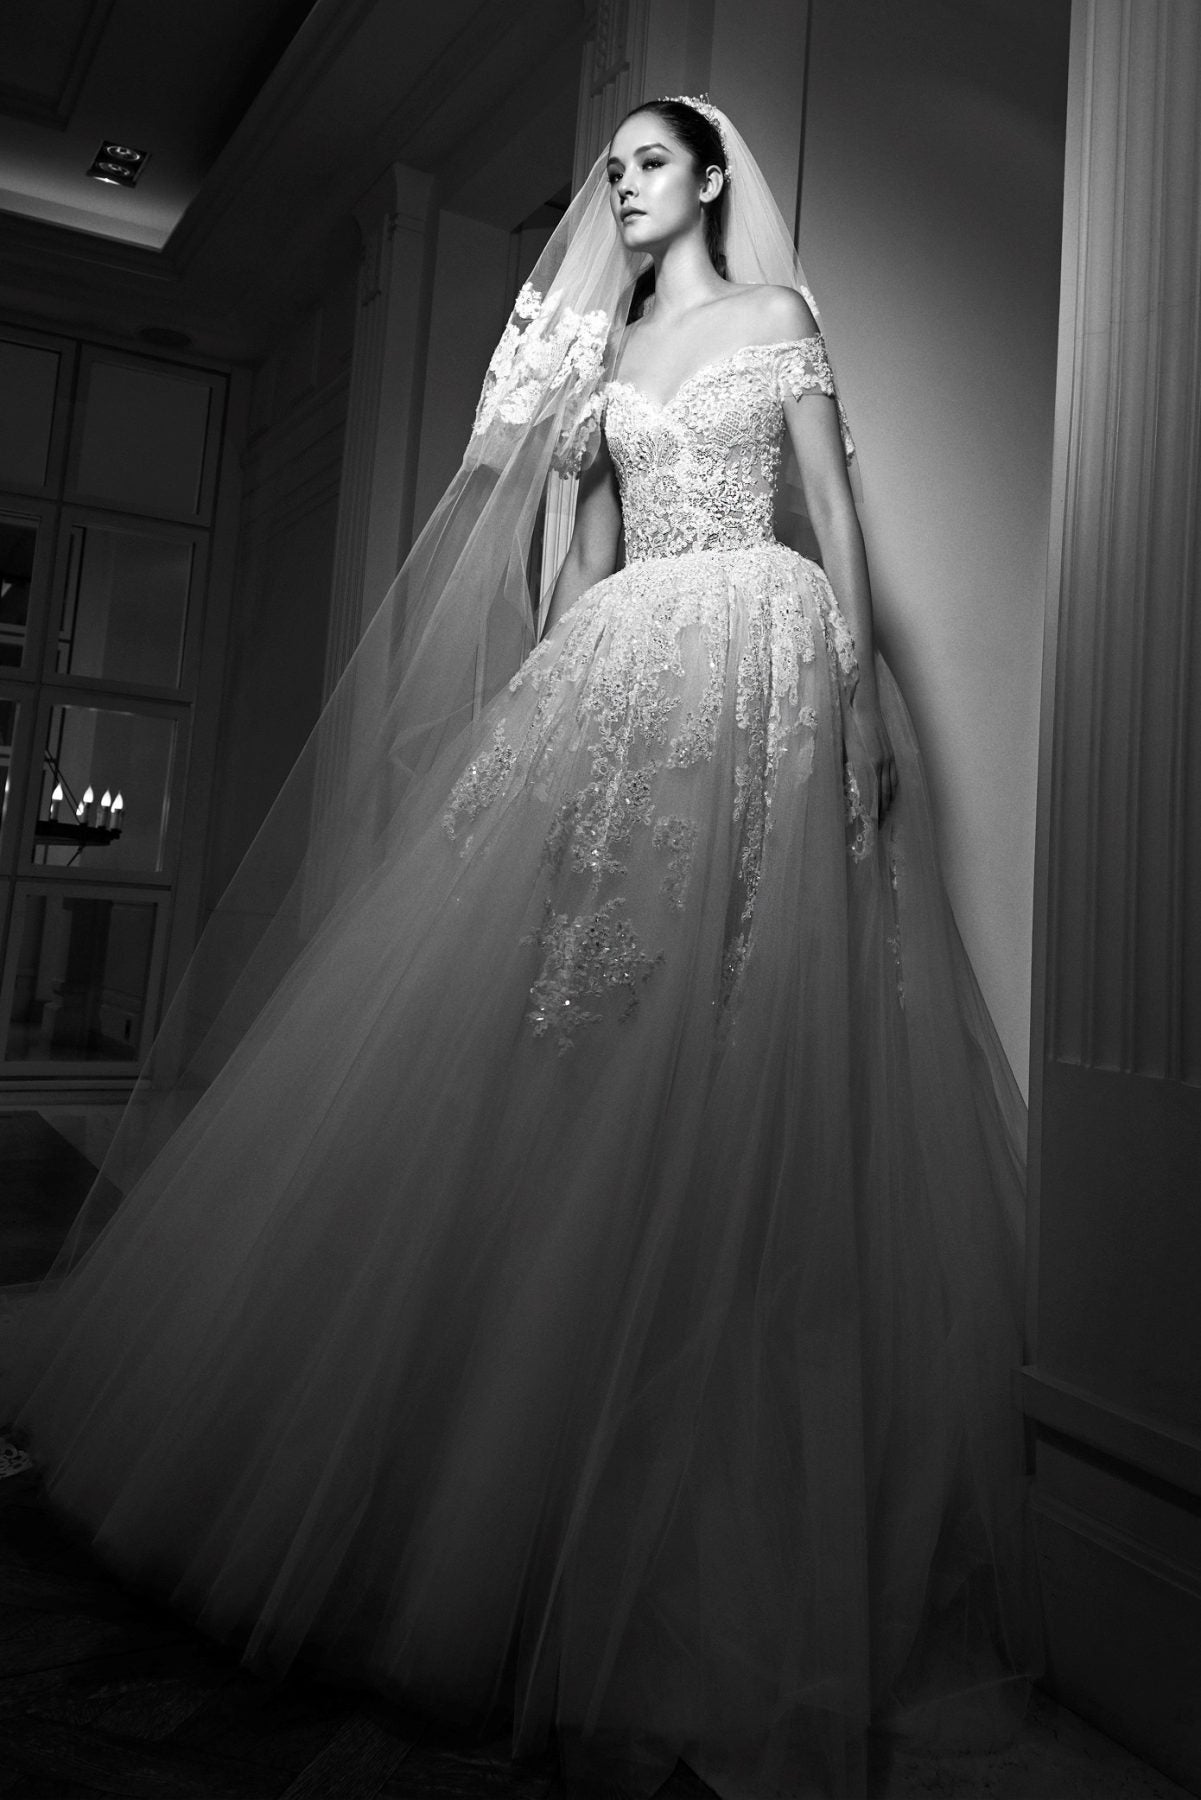 zuhair-murad-couture-a-line-wedding-dress-33587767-1201x1800.jpg